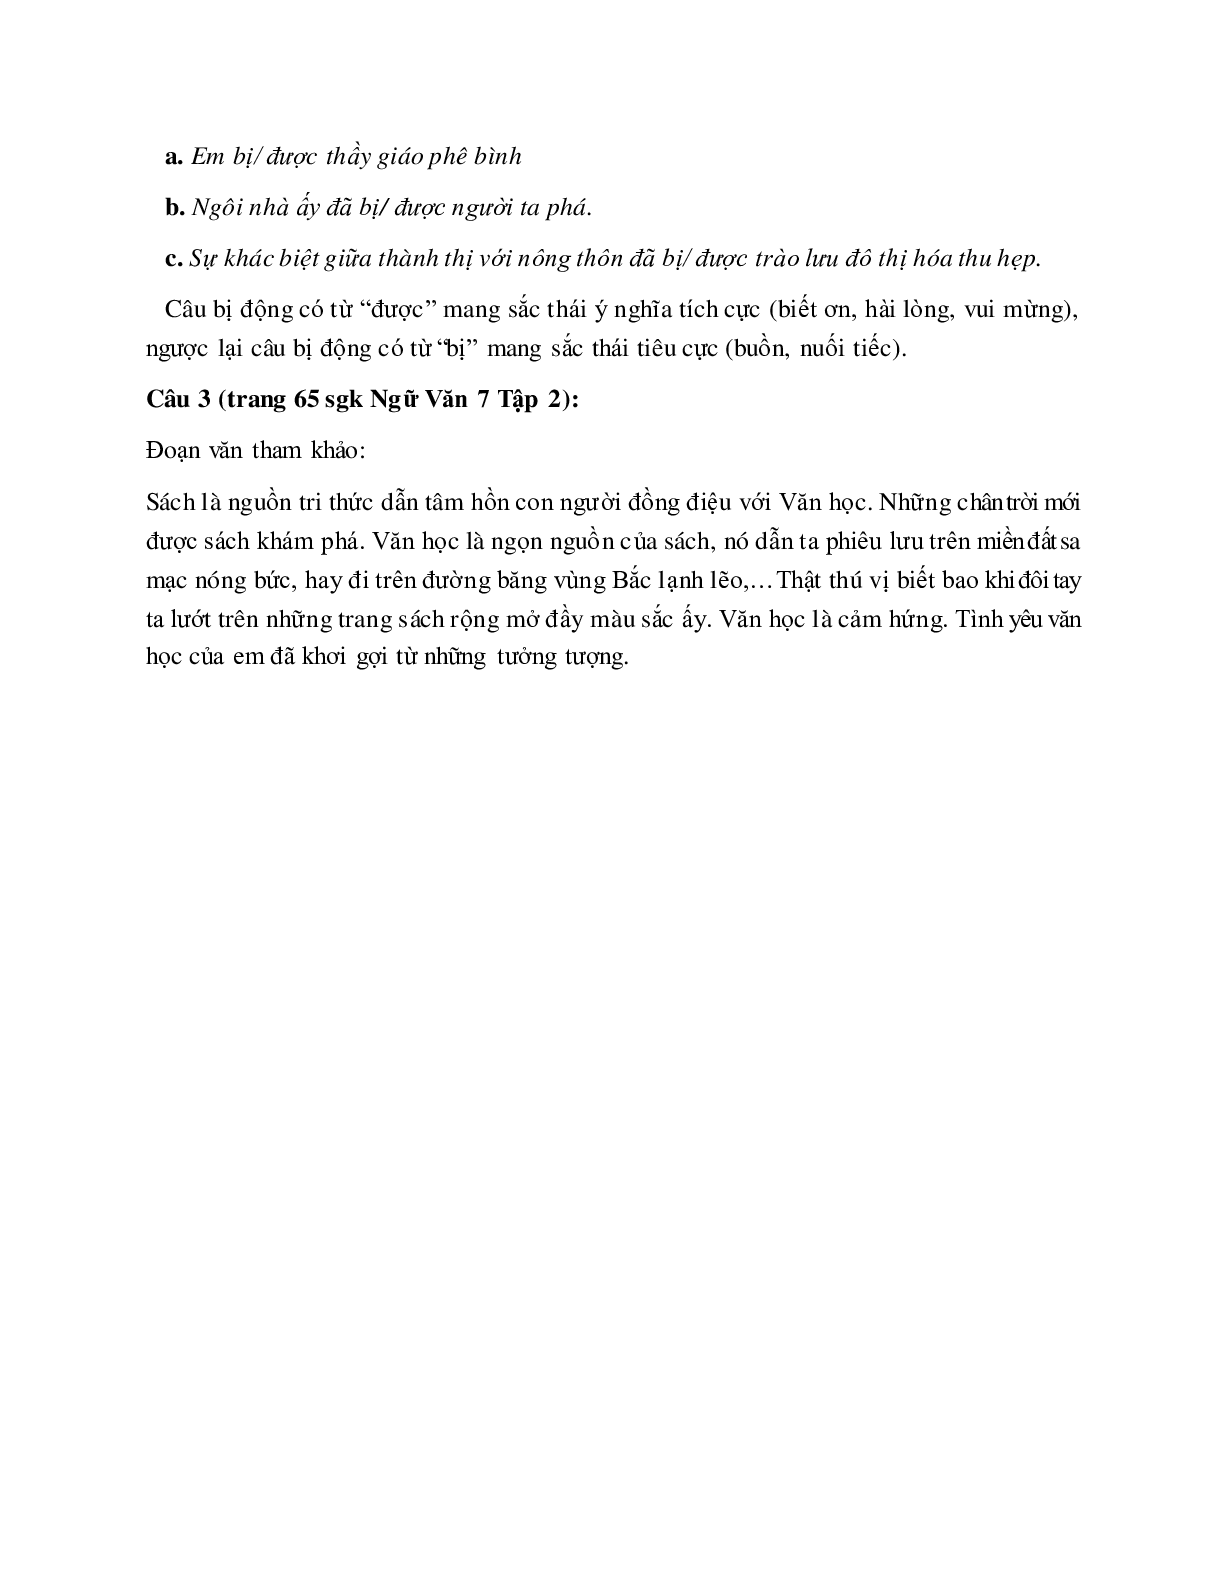 Soạn bài Chuyển đổi câu chủ động thành câu bị động (tiếp theo) - ngắn nhất Soạn văn 7 (trang 2)